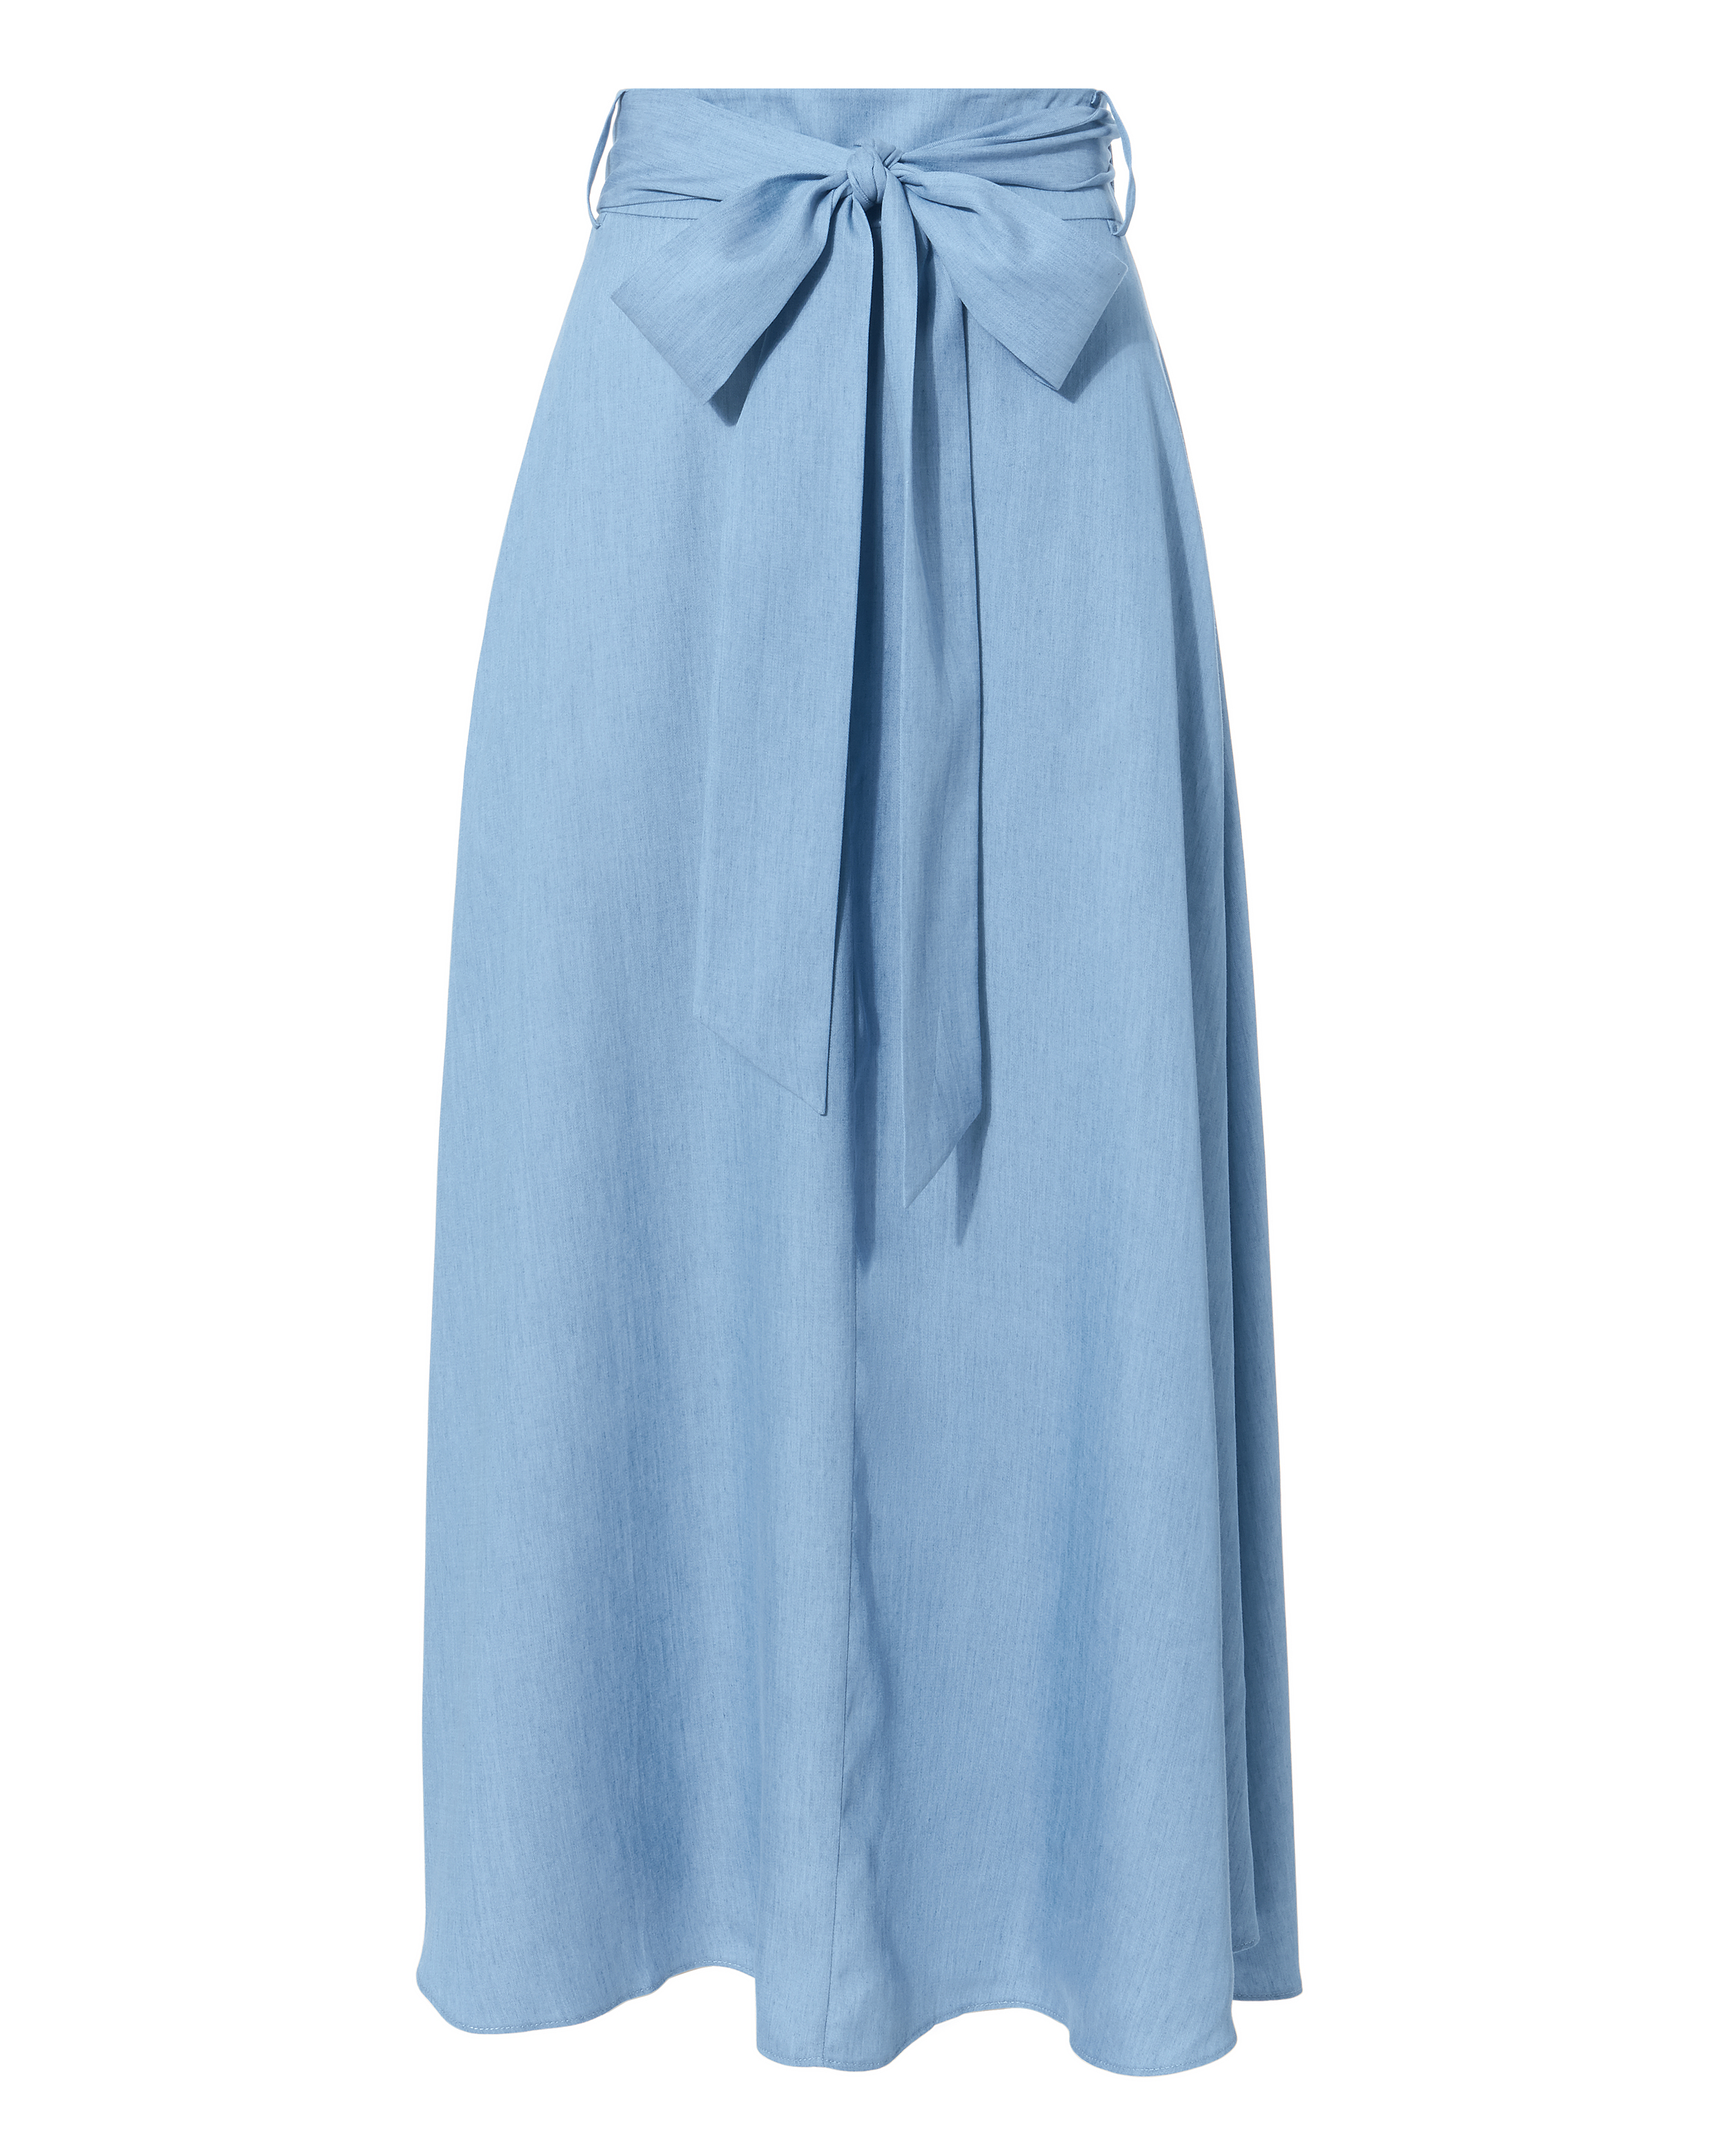 TIBI Denim Midi Skirt,P118CD5096-EXCL